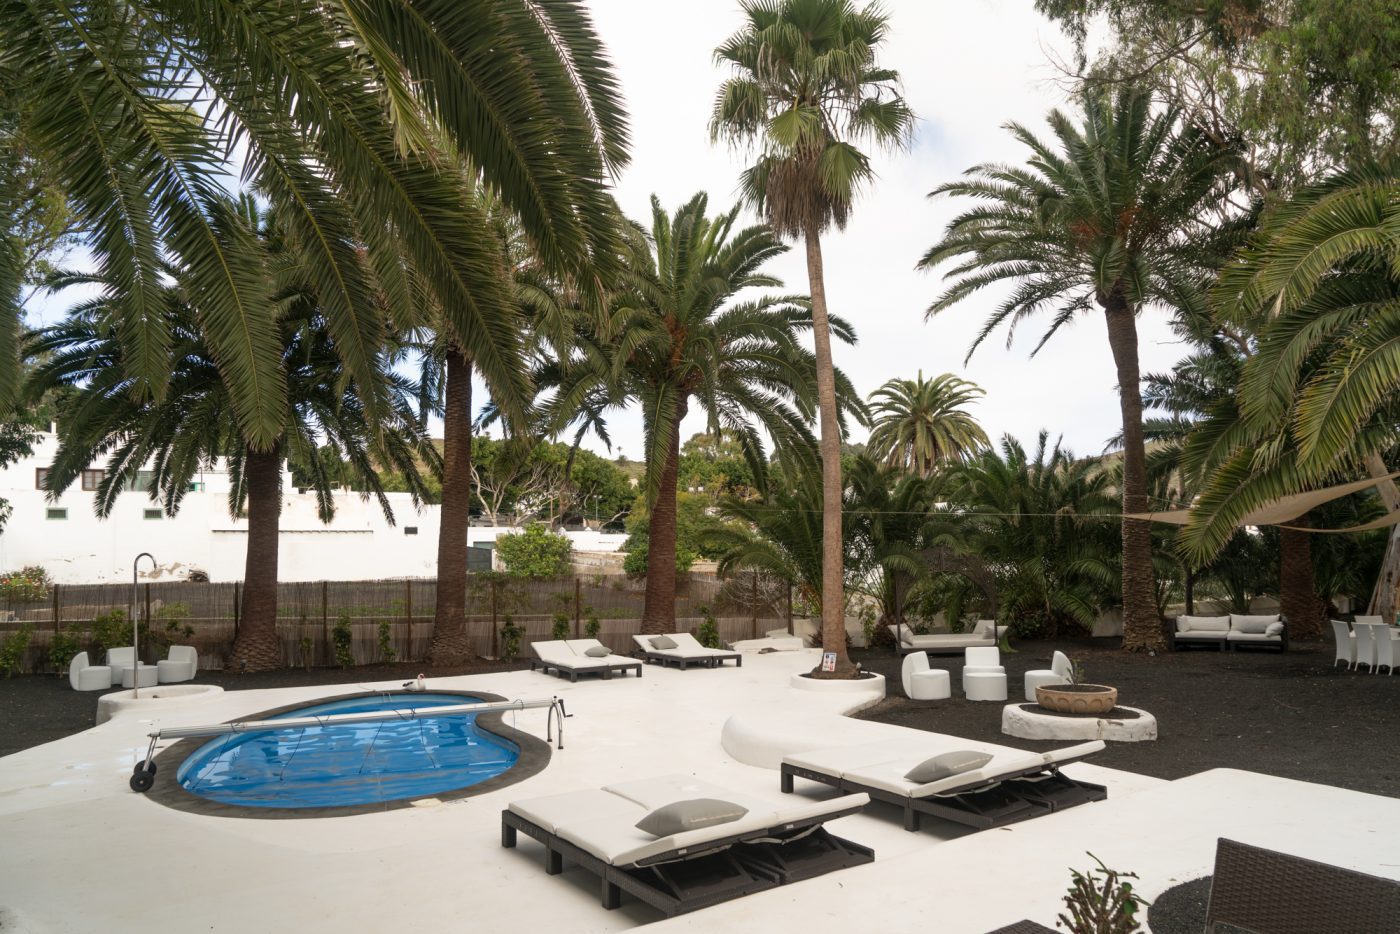 Pool designed by Cesar Manrique at Villa Delmas in Haria, Lanzarote